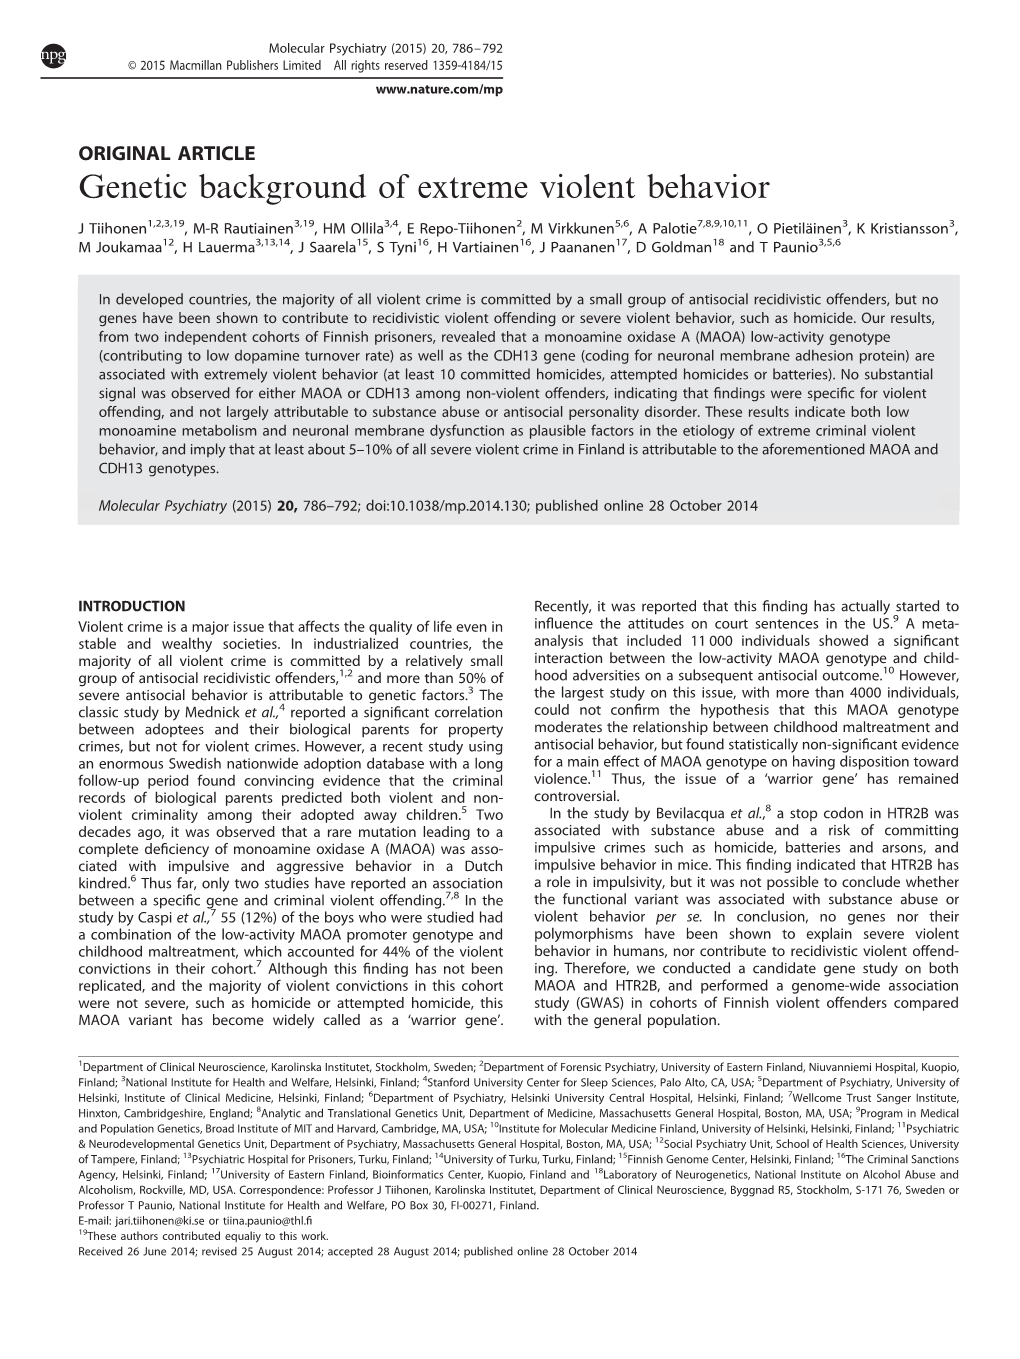 Genetic Background of Extreme Violent Behavior